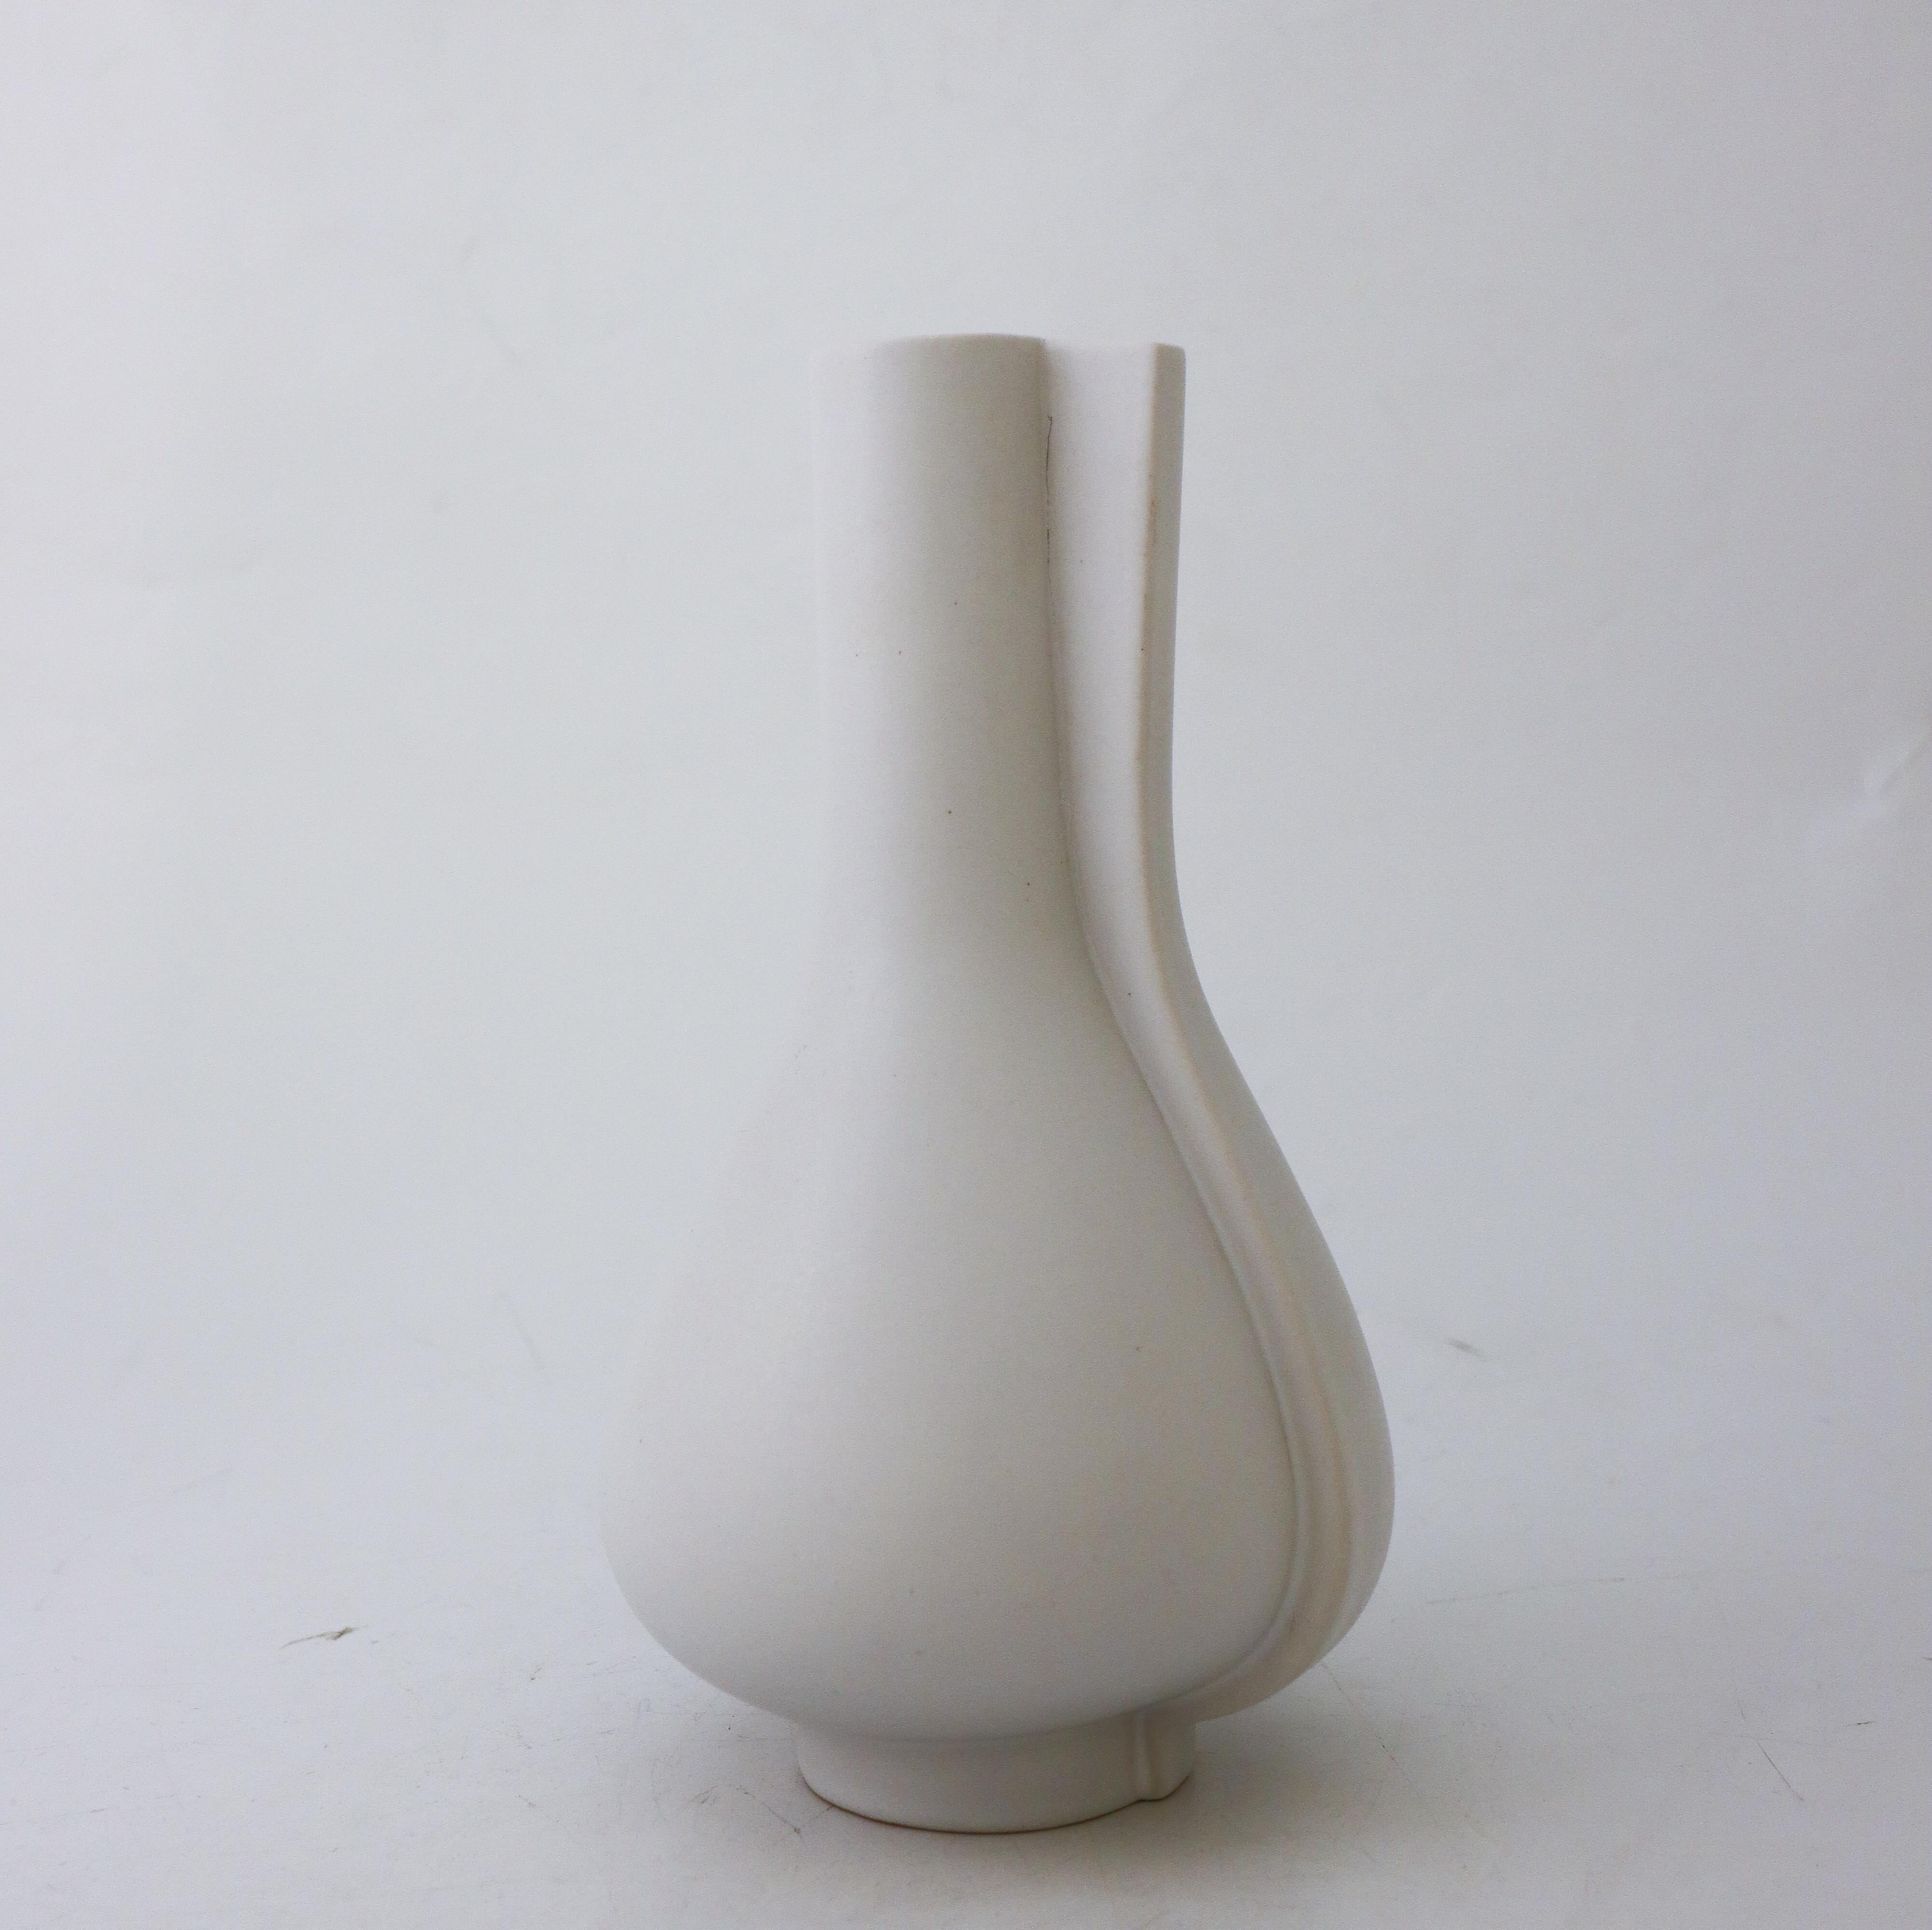 Eine schöne Vase des Modells Surrea, entworfen von Wilhelm Kåge bei Gustavsberg in den 1940er Jahren. Sie ist 23 cm hoch und bis auf einige kleine Kratzer in der Glasur in sehr gutem Zustand. Es ist nicht gekennzeichnet, viele der überirdischen